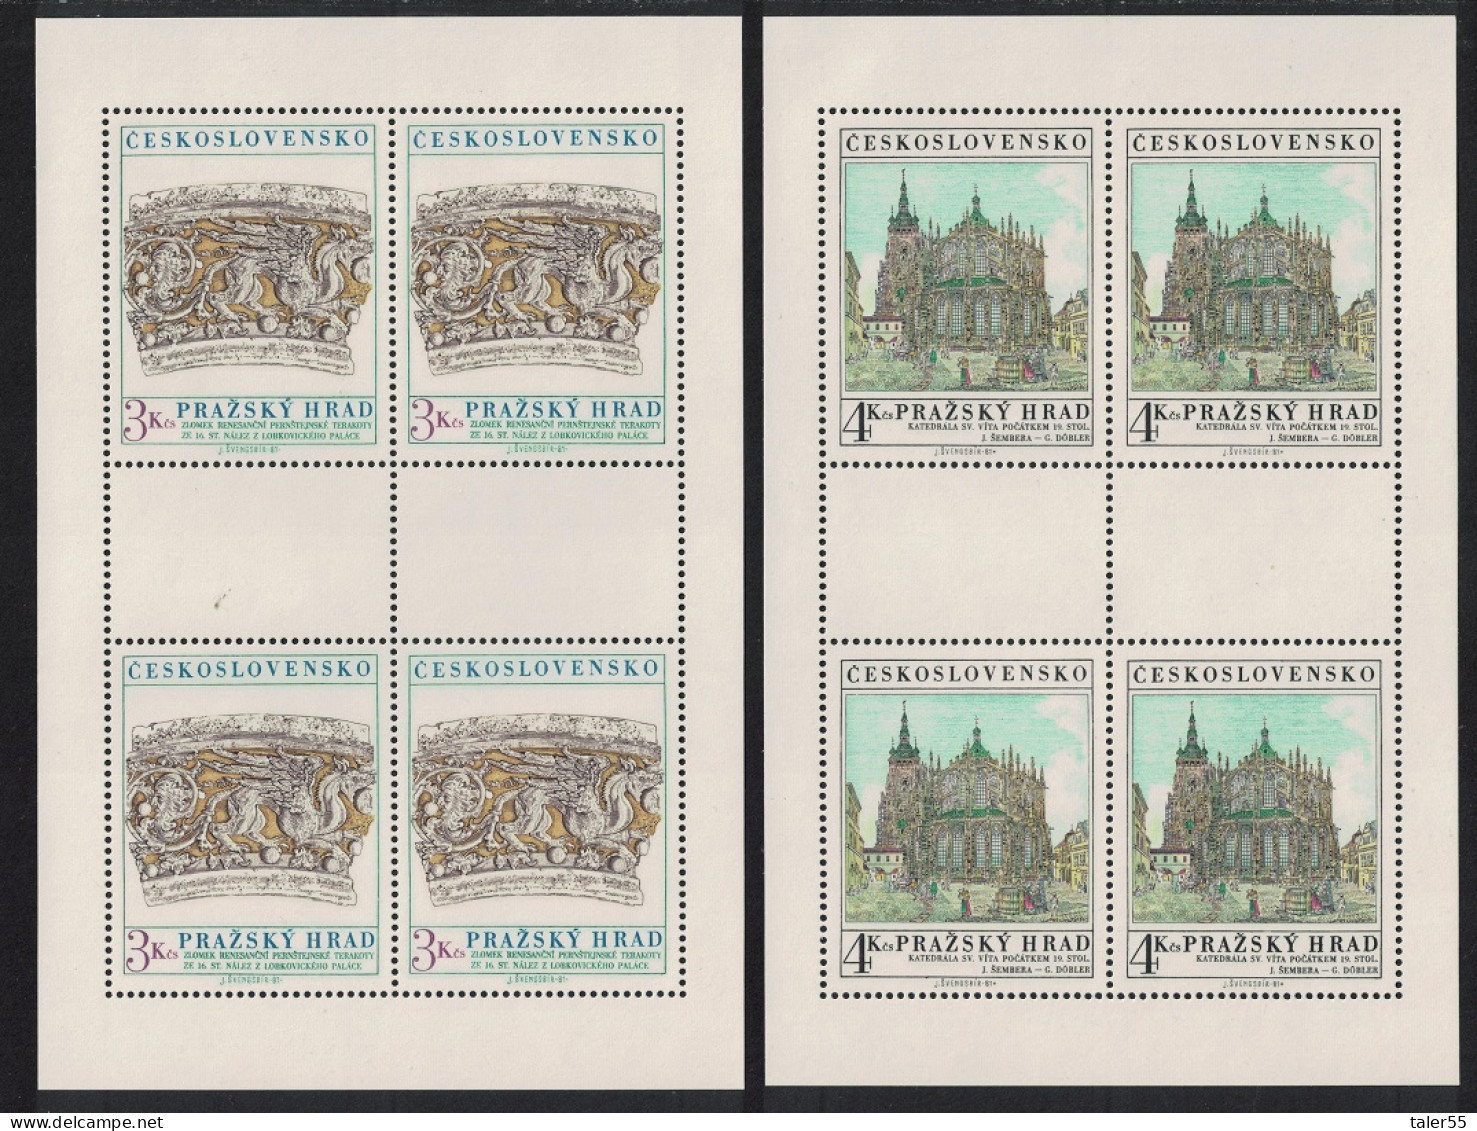 Czechoslovakia Prague Castle 17th Series 2 Sheetlets 1981 MNH SG#2599-2600 - Nuovi